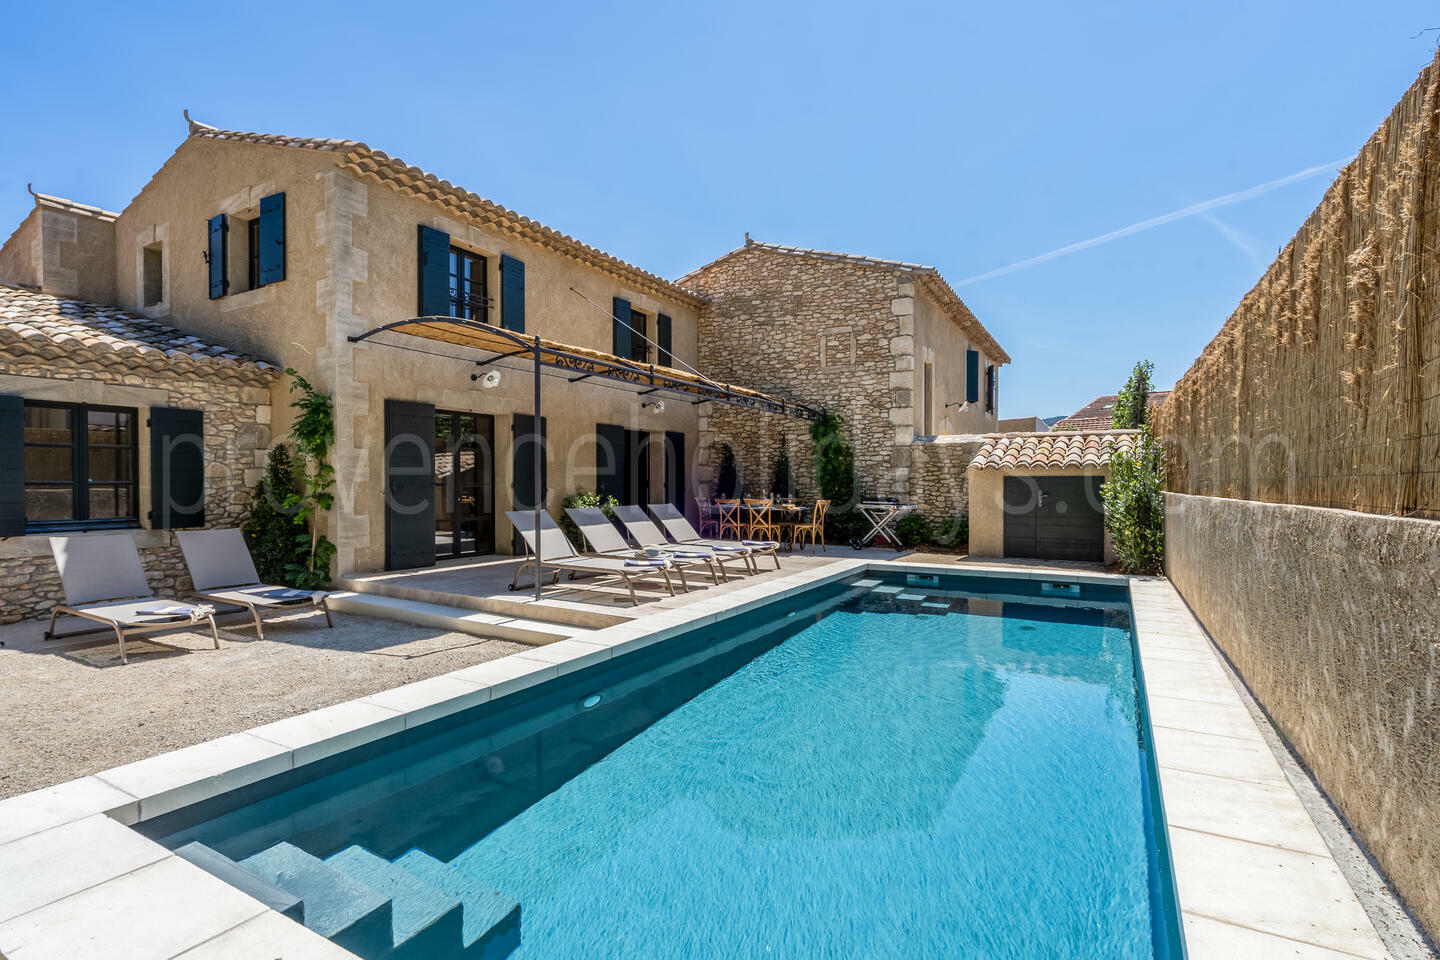 Location de vacances entièrement rénovée avec piscine privée à Eygalières Maison des Amandes: Villa - 1